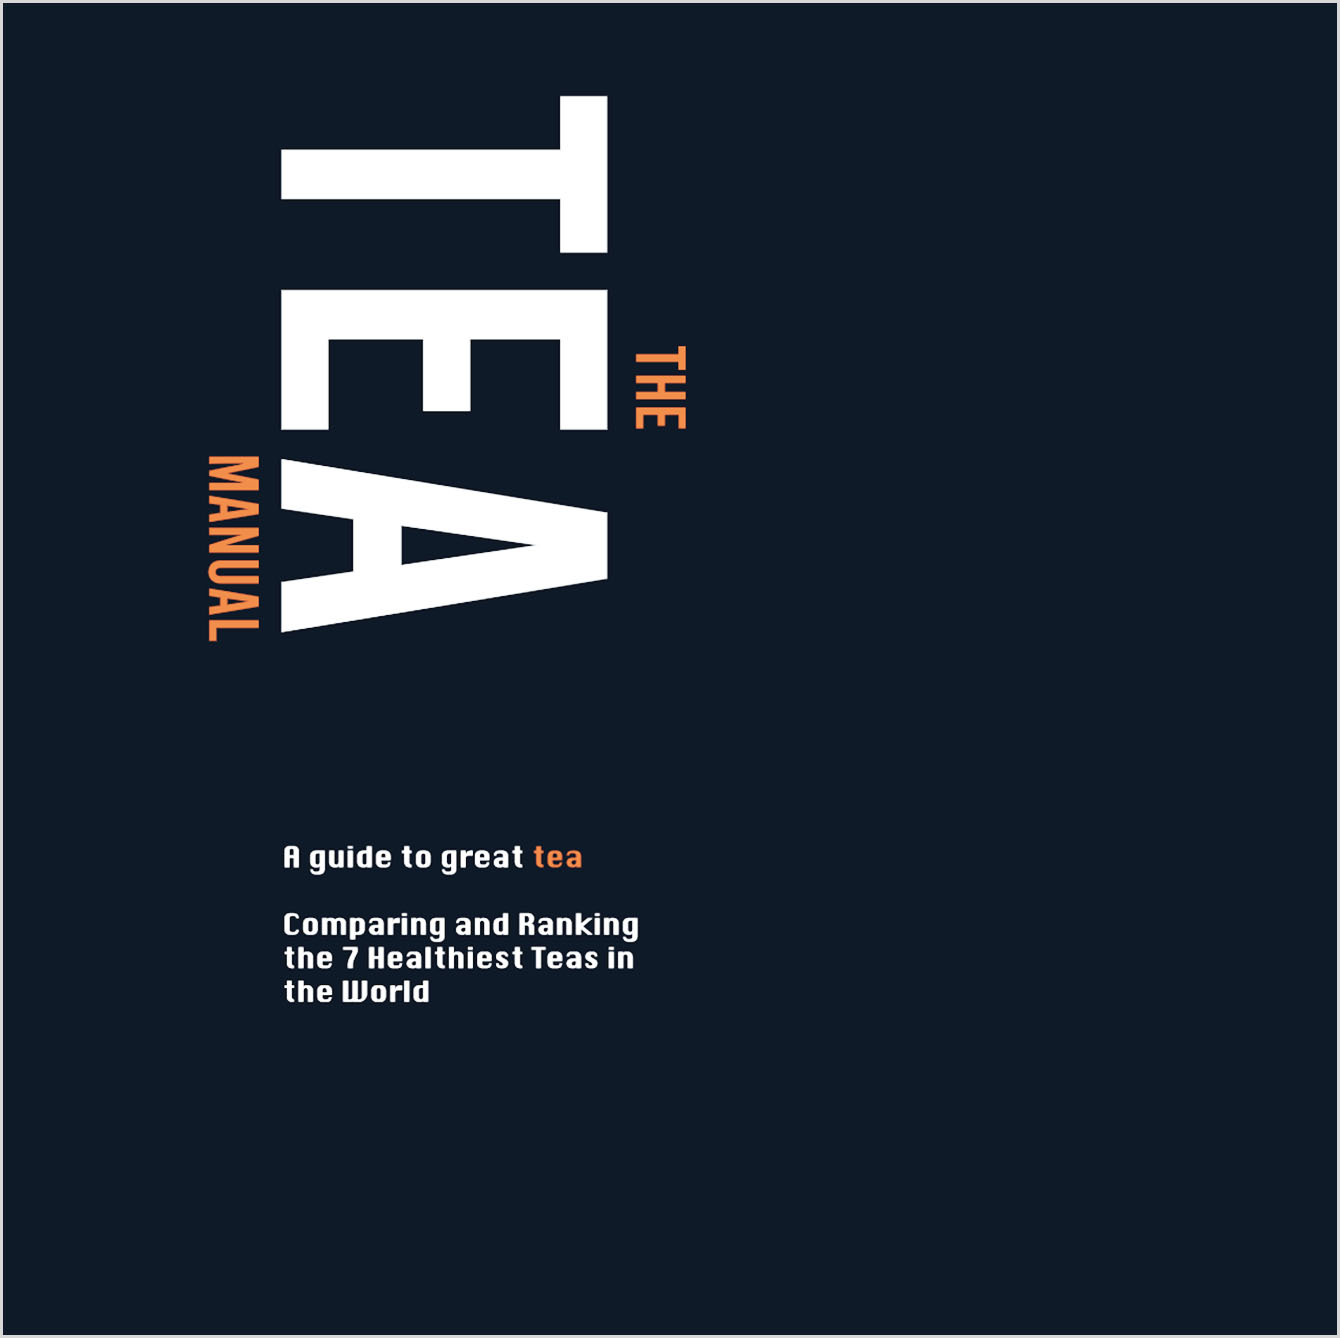 Morse: The Tea Manual